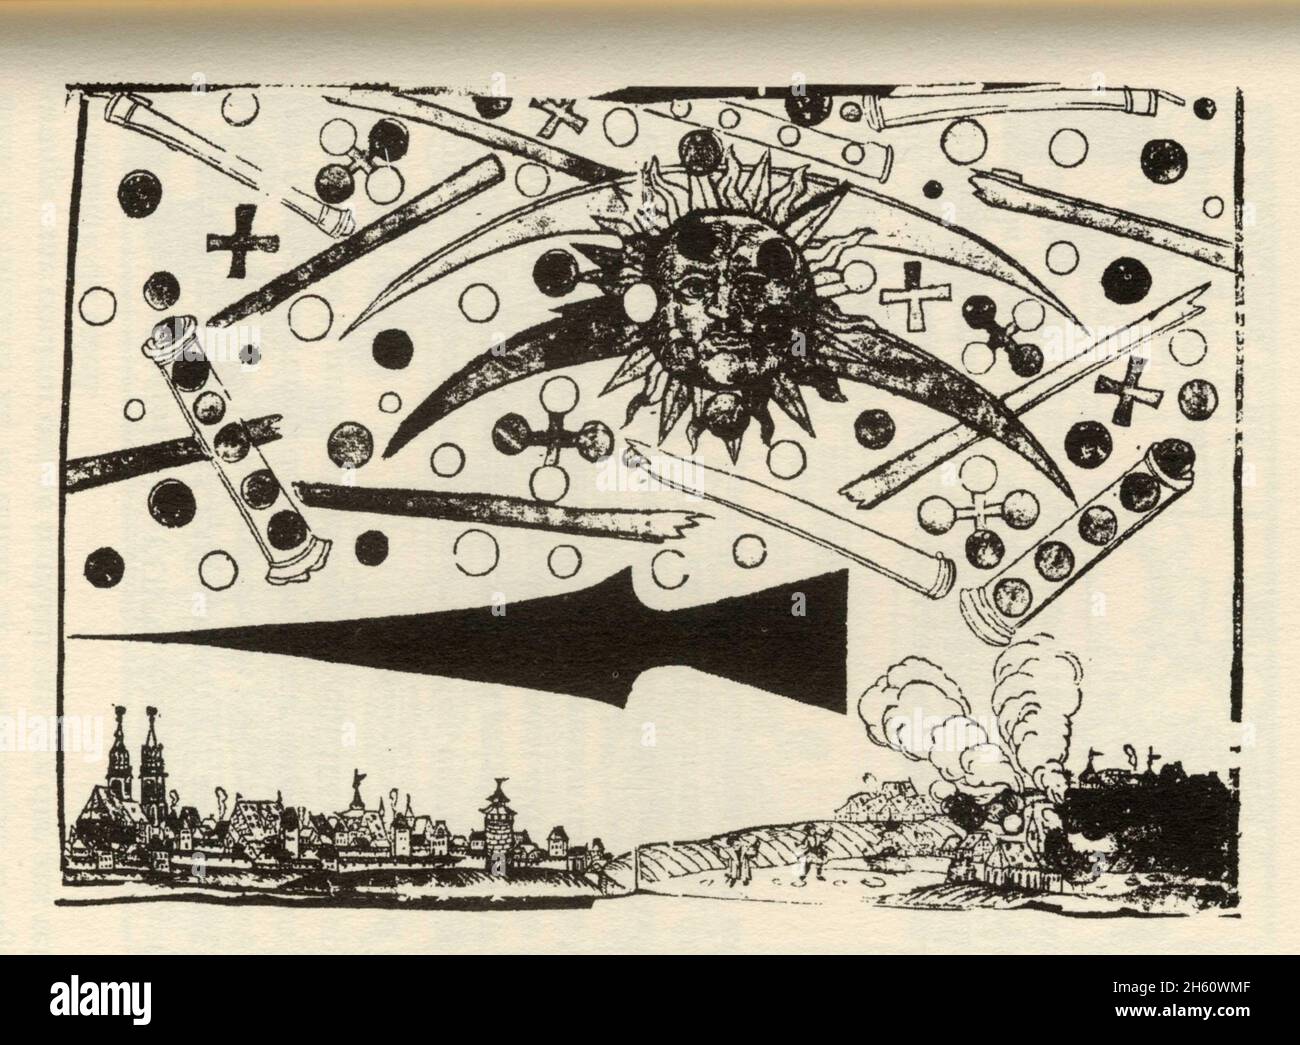 Phénomène aérien observé à Norimberga le 14 avril 1561. Des cylindres contenant des objets ronds Foto Stock